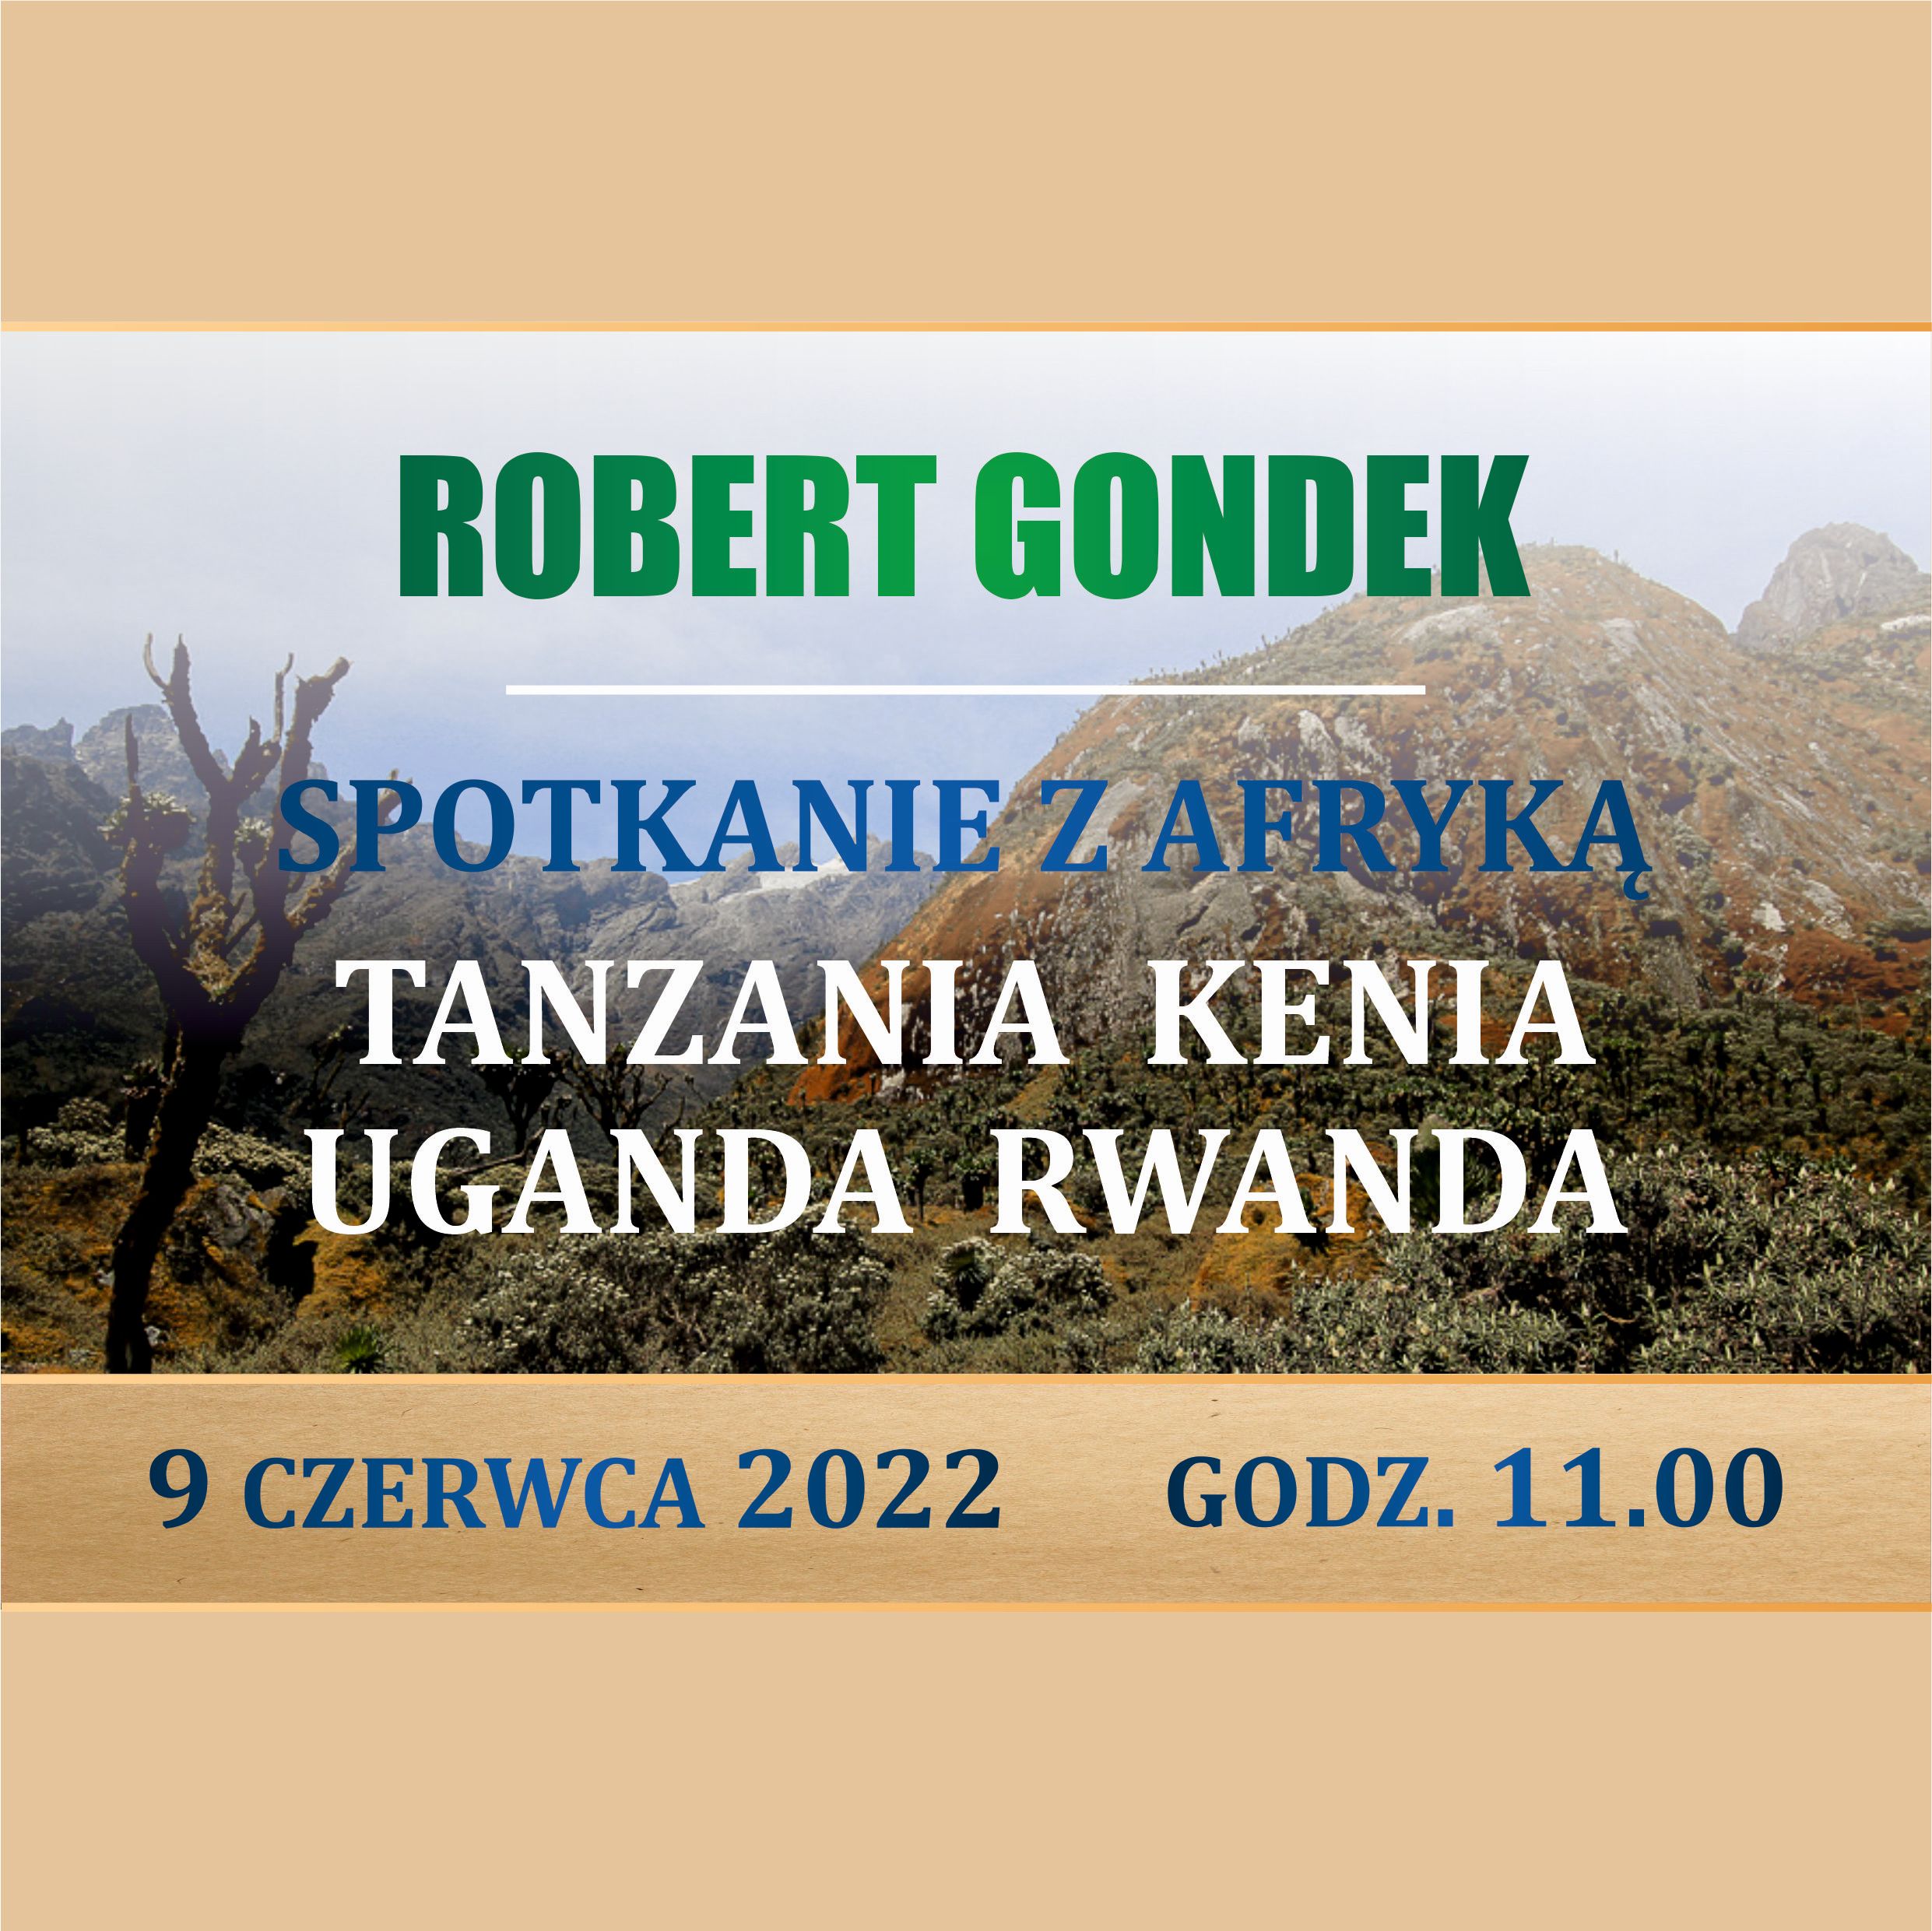 Robert Gondek - Spotkanie Z Afryką: Tanzania, Kenia, Uganda, Rwanda - 9 Czerwca 2022, Godz. 11.00